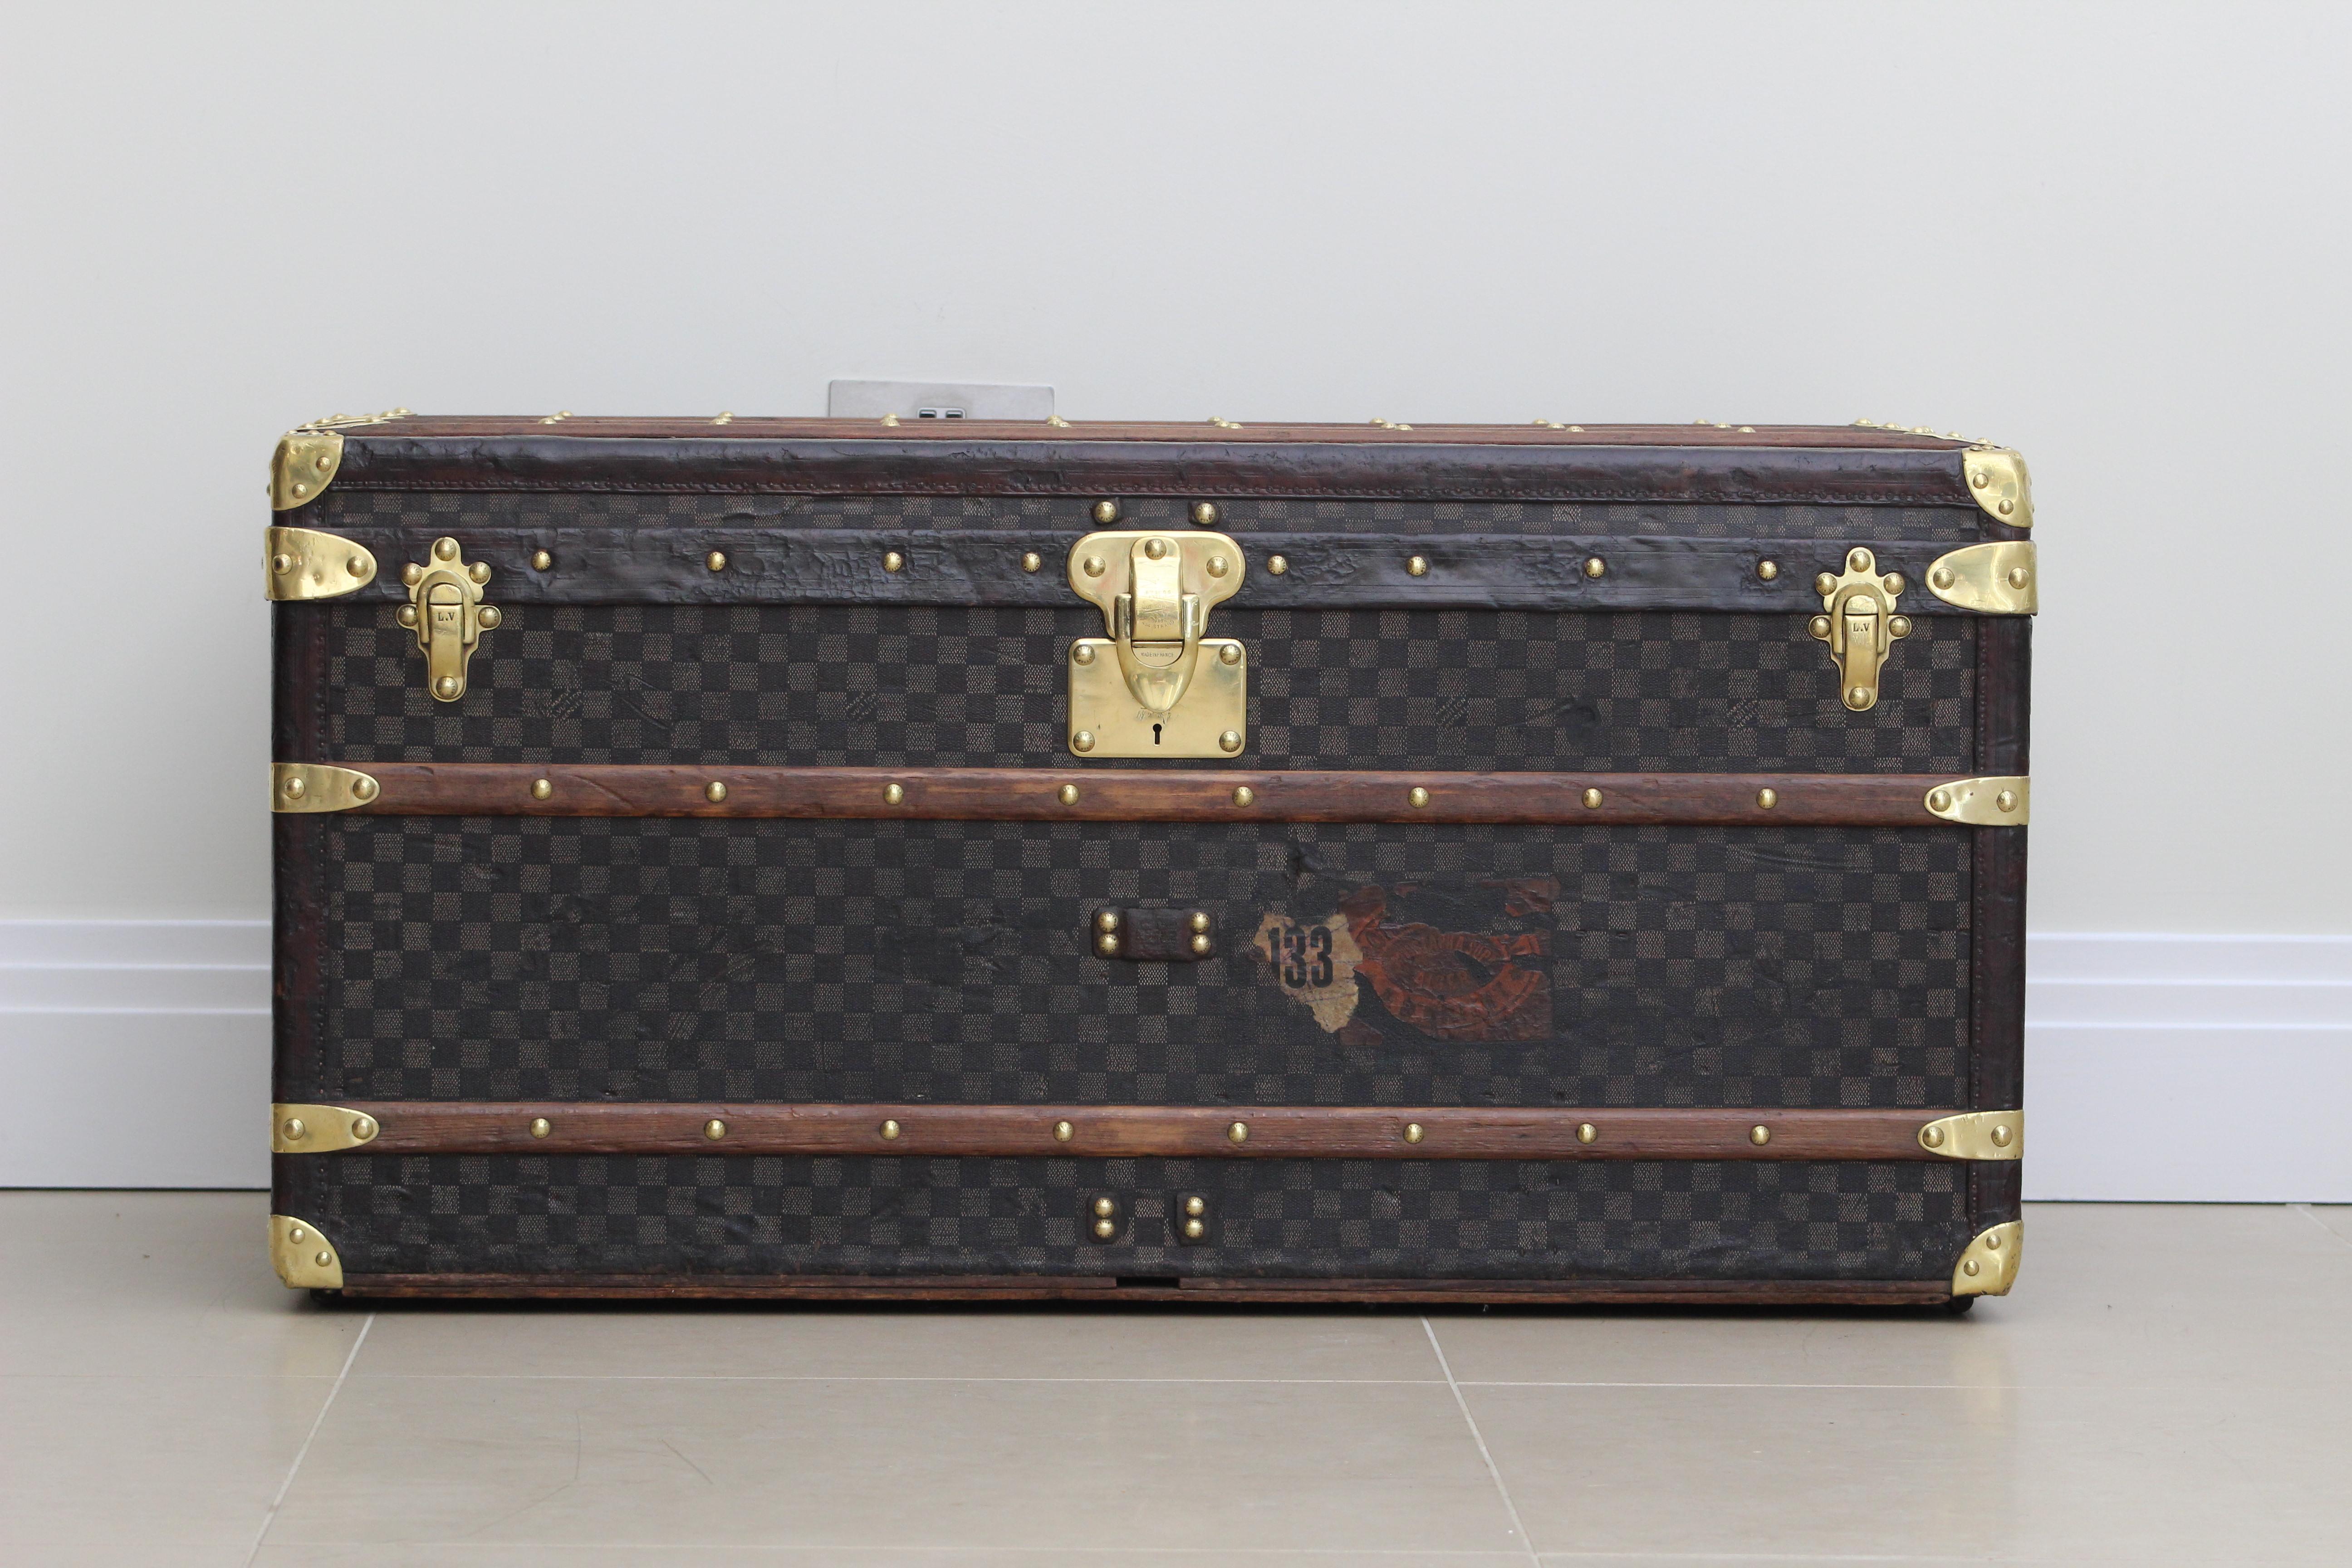 Une exquise malle Courier en damier de Louis Vuitton datant des années 1880, une pièce intemporelle qui respire l'élégance et l'histoire. Cette pièce rare est un véritable témoignage du savoir-faire et de la qualité durable de Louis